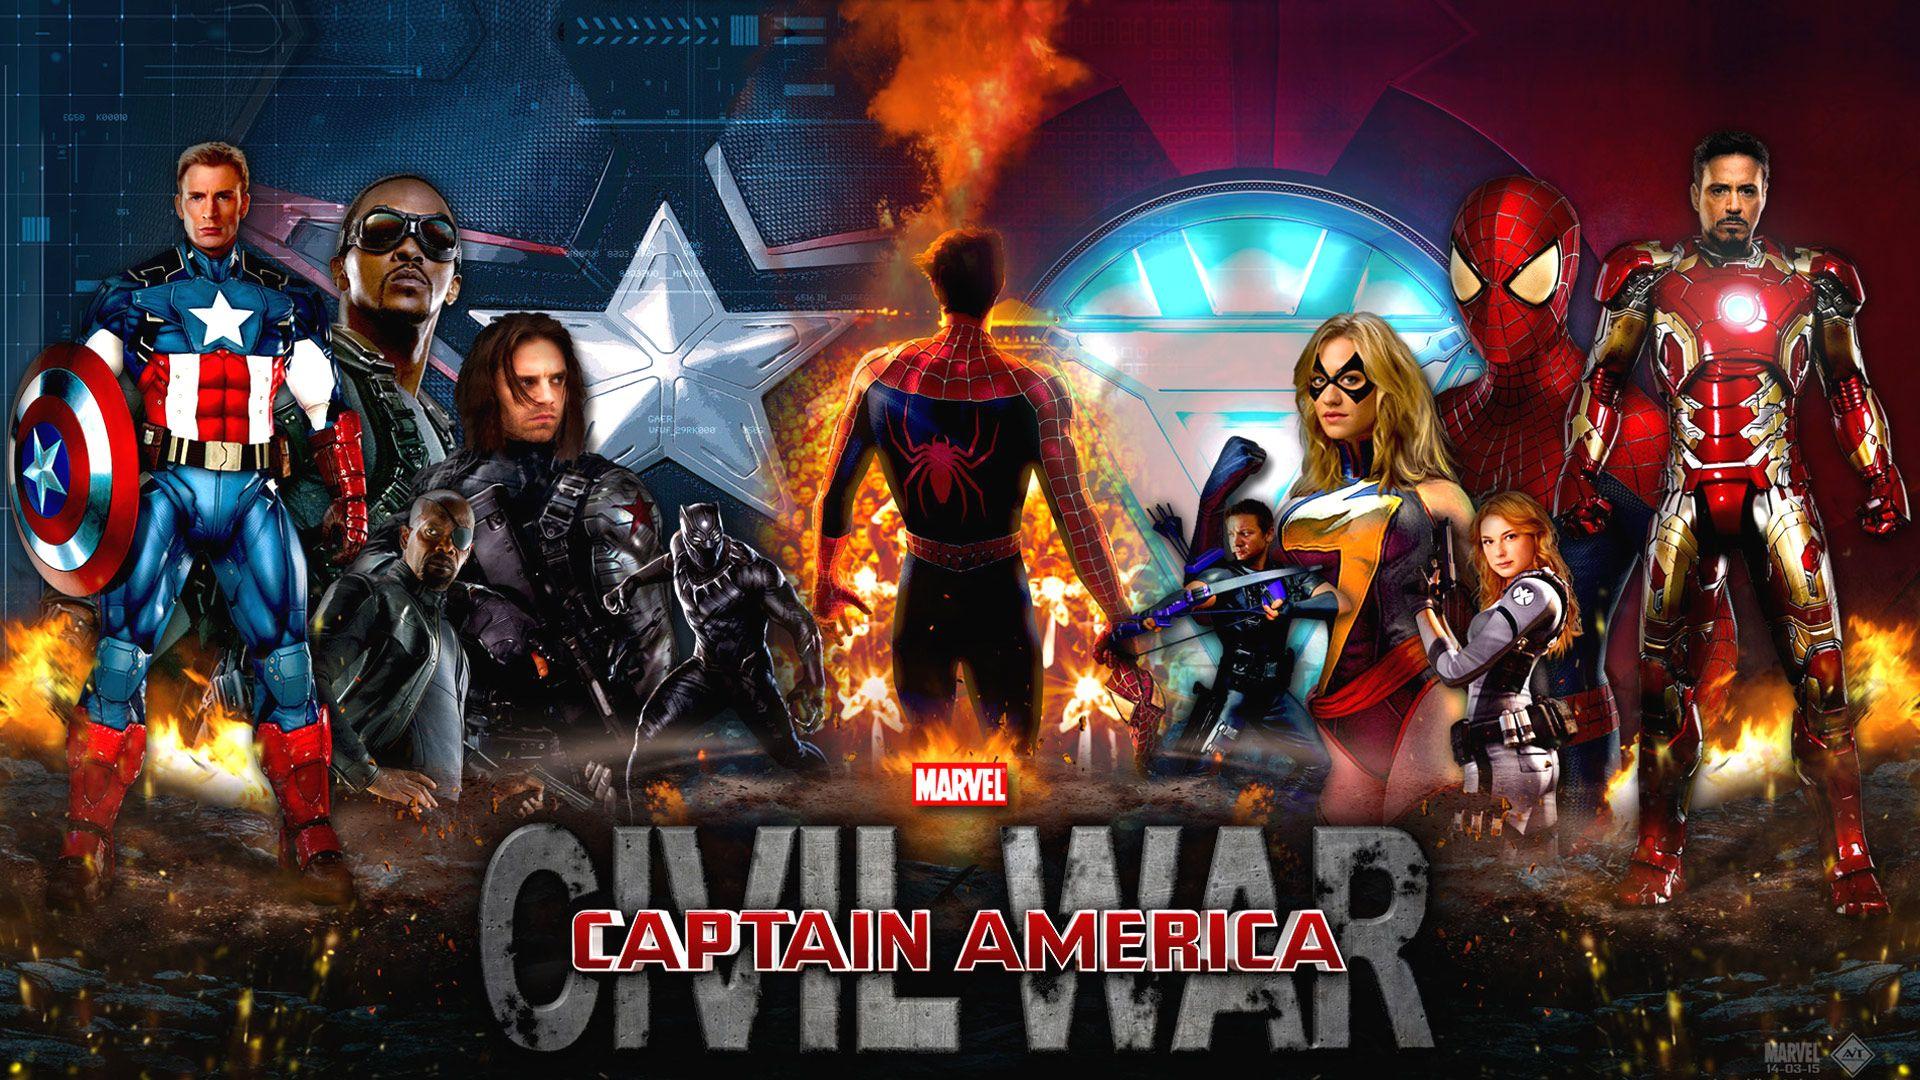 Civil War Captain America Wallpapers - Top Free Civil War Captain